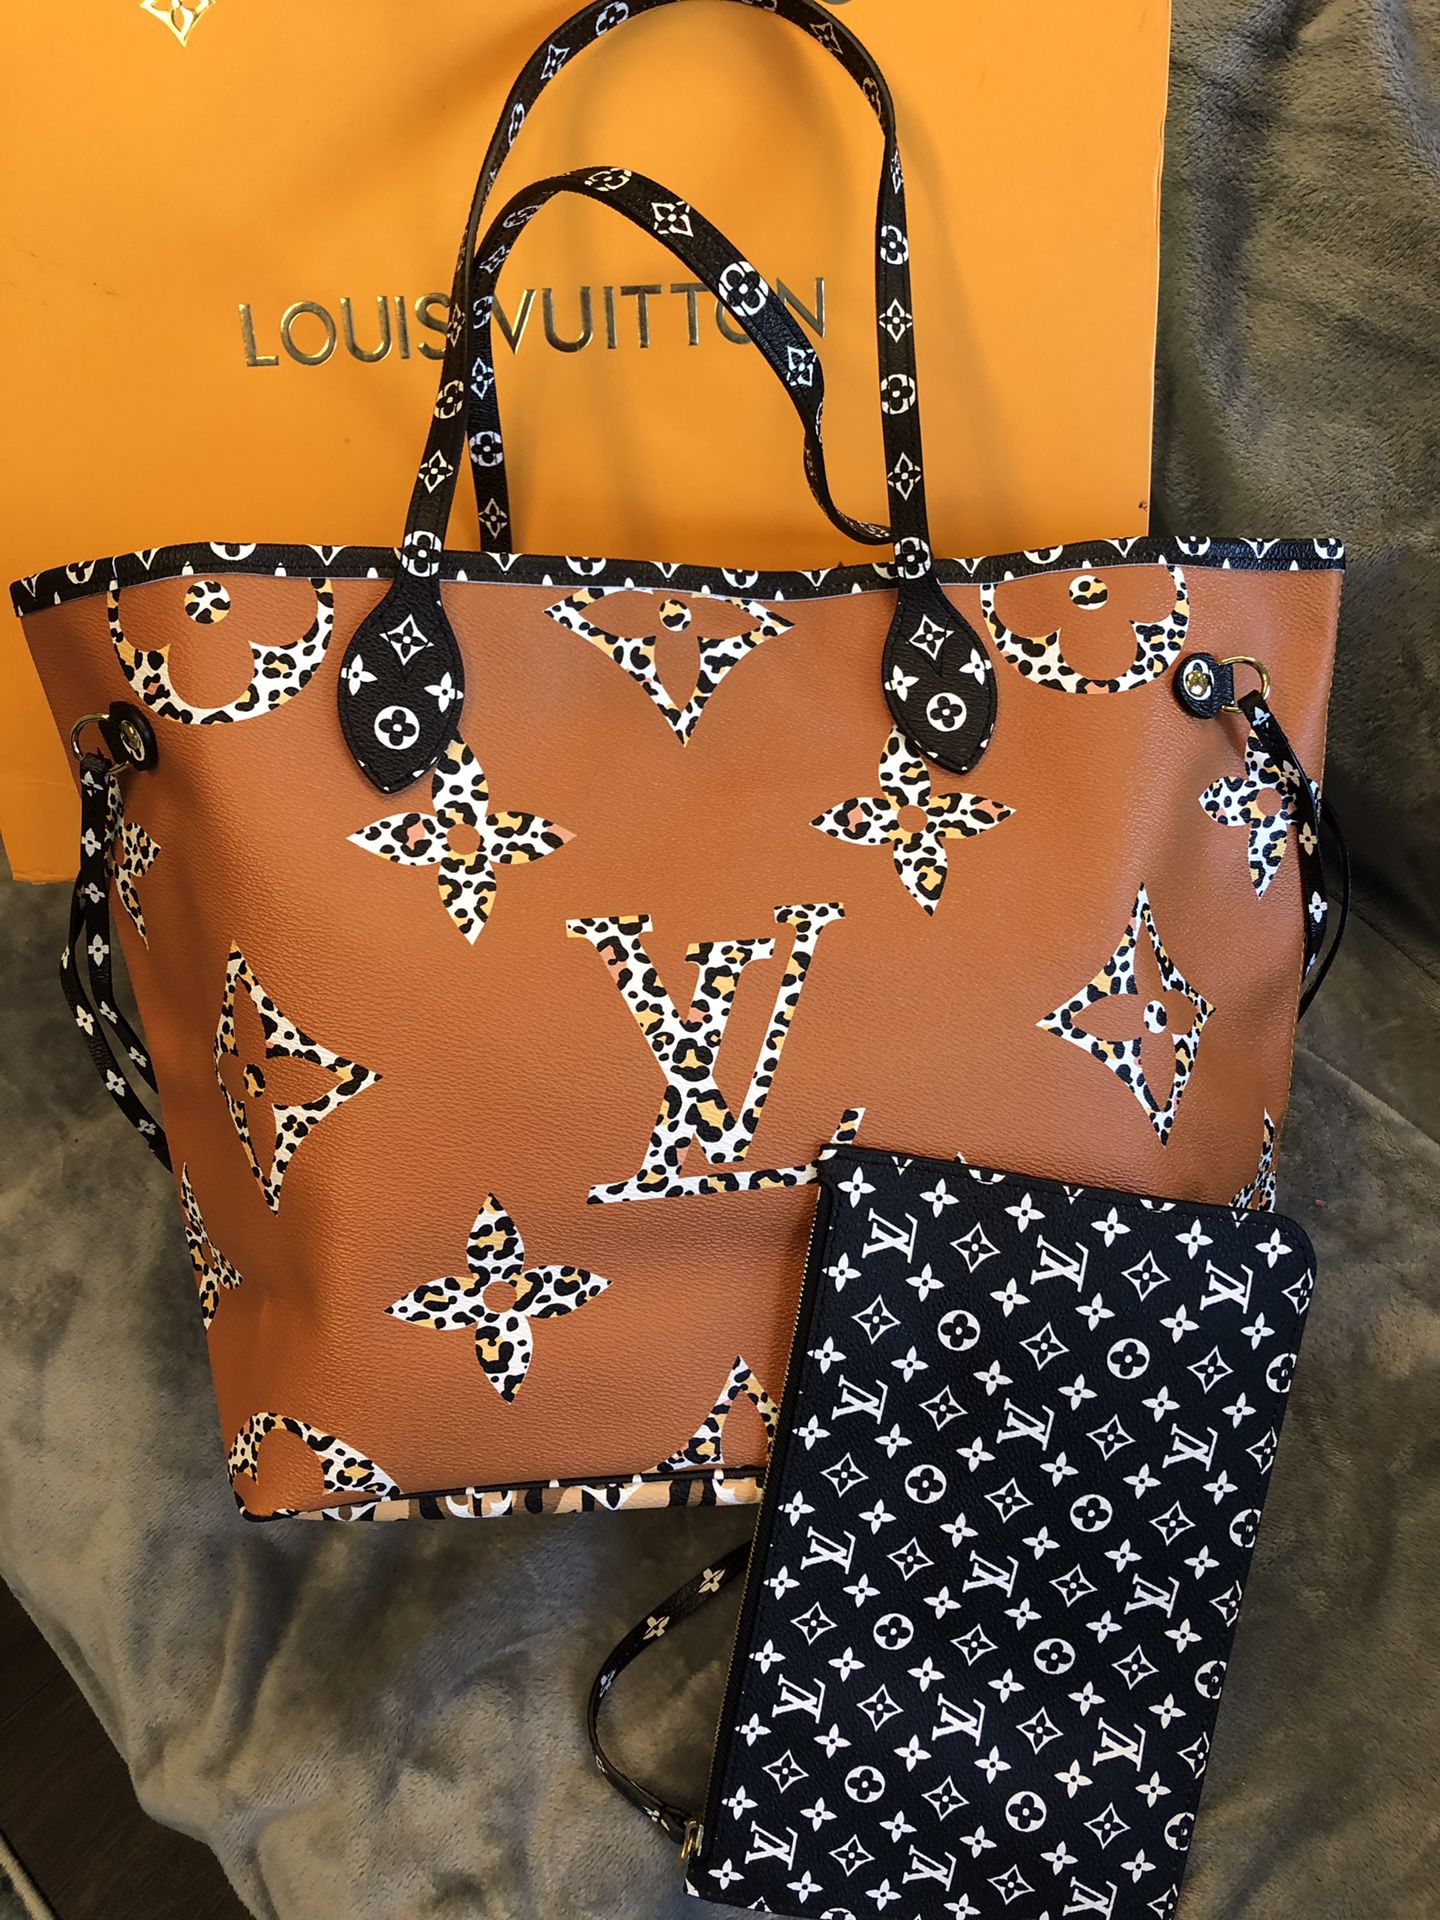 Louis Vuitton Cheetah print Neverfull MM bag